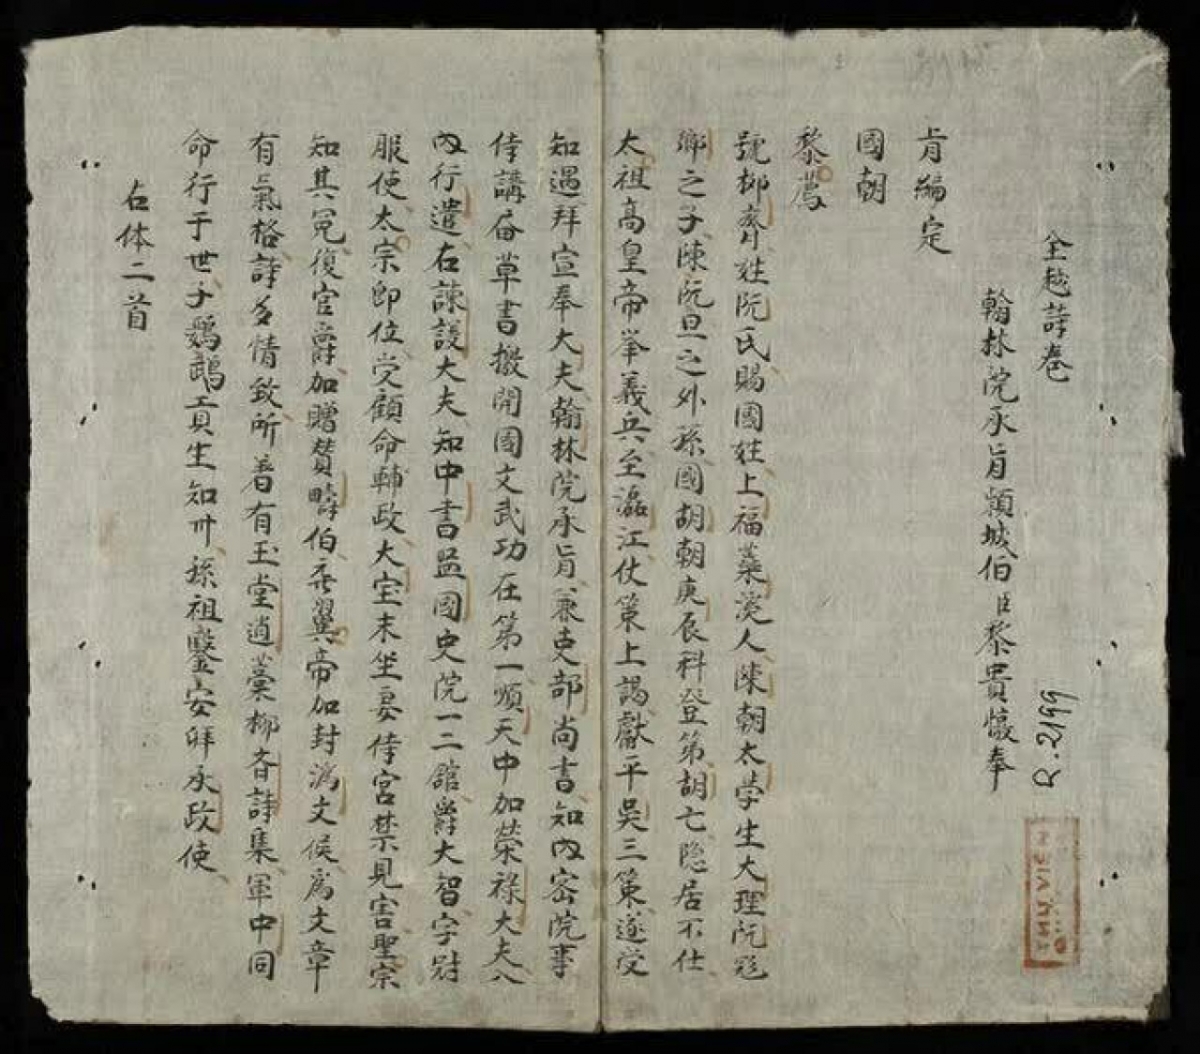 Nhiều cuốn sách quý ở Viện Nghiên cứu Hán Nôm hiện chưa được tìm thấy (Ảnh: Thư viện quốc gia).